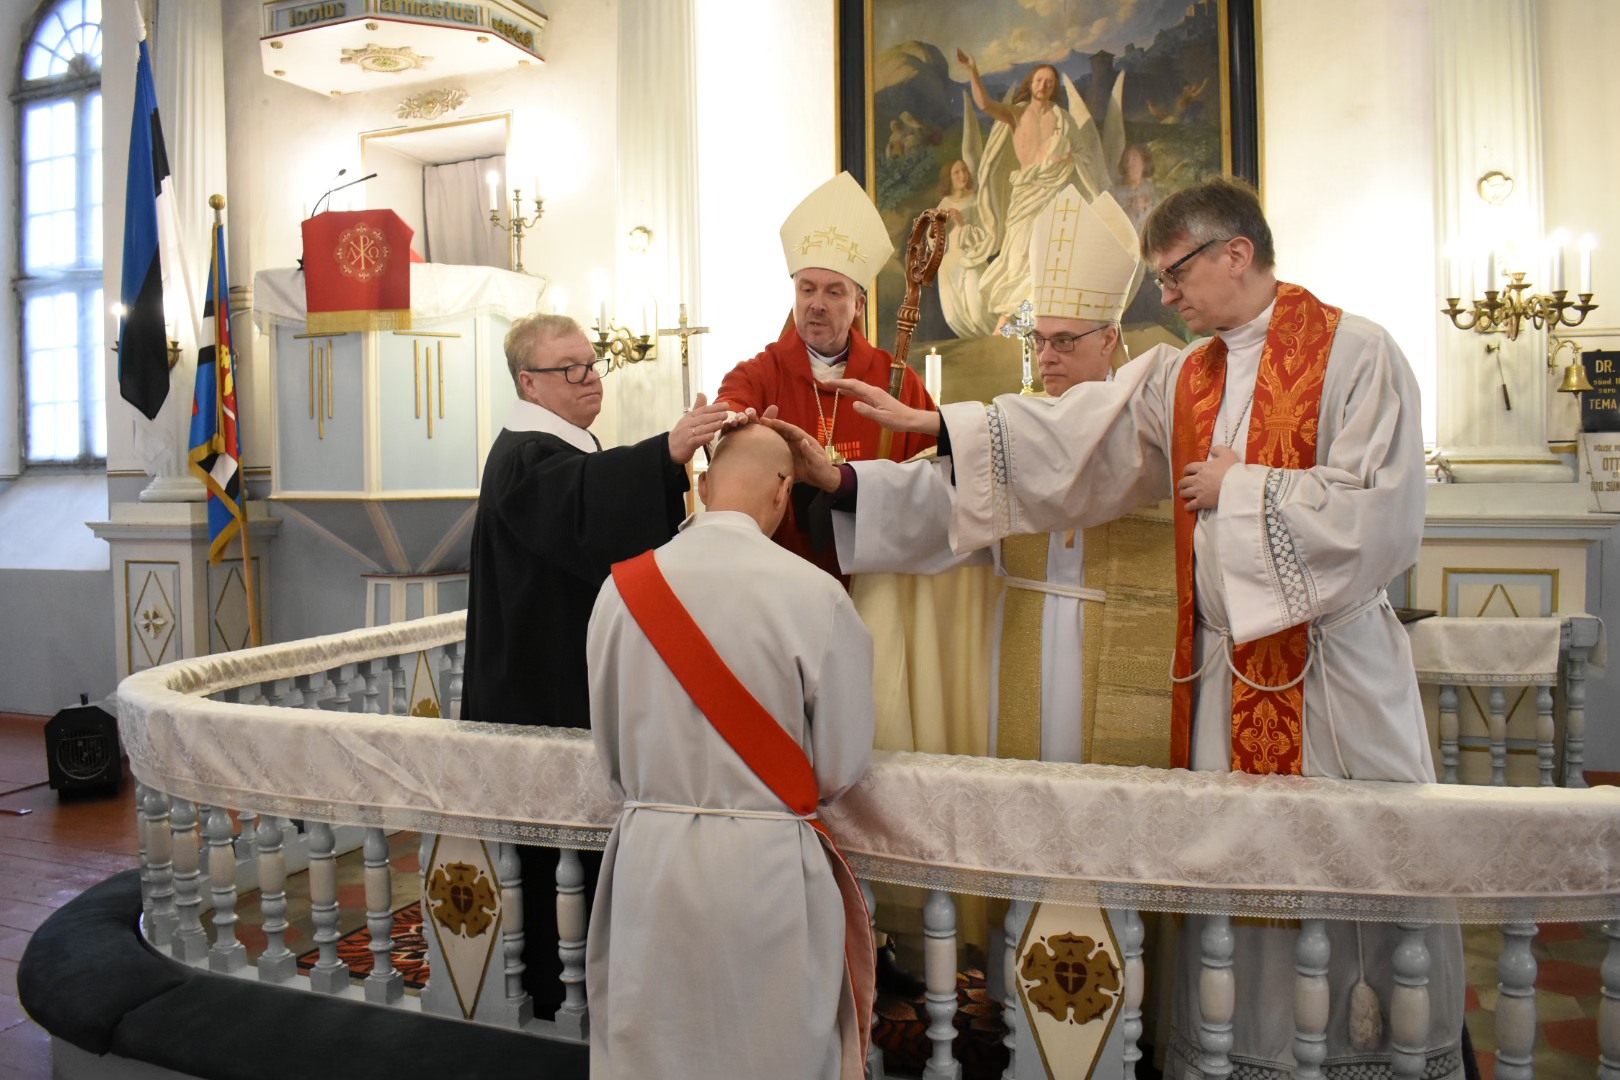 Markusepäeval (25.04) toimus Põlva kirikus Võru praostkonna sinodi avajumalateenistus, kus peapiiskop Urmas Viilma seadis diakon Urmas Kooritsa Põlva koguduse d